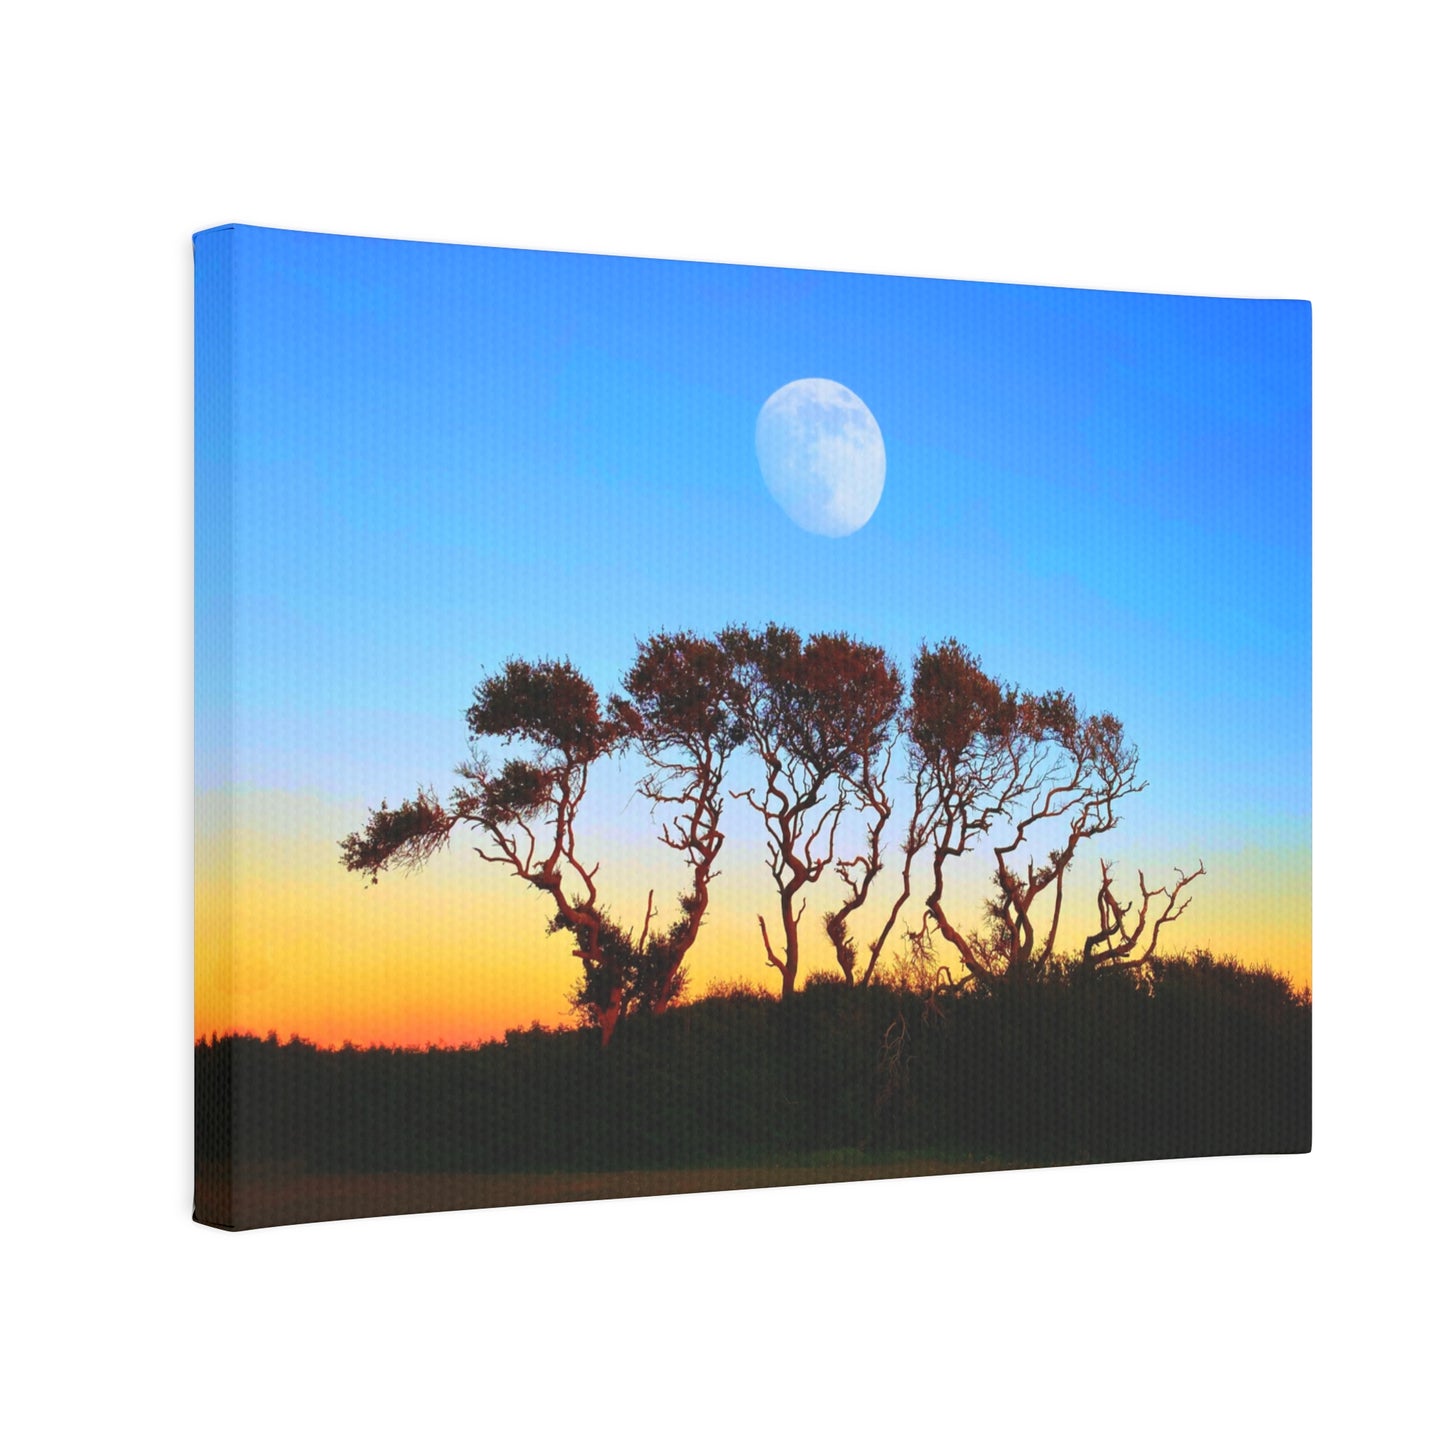 Sunset Moon Canvas Photo Tile